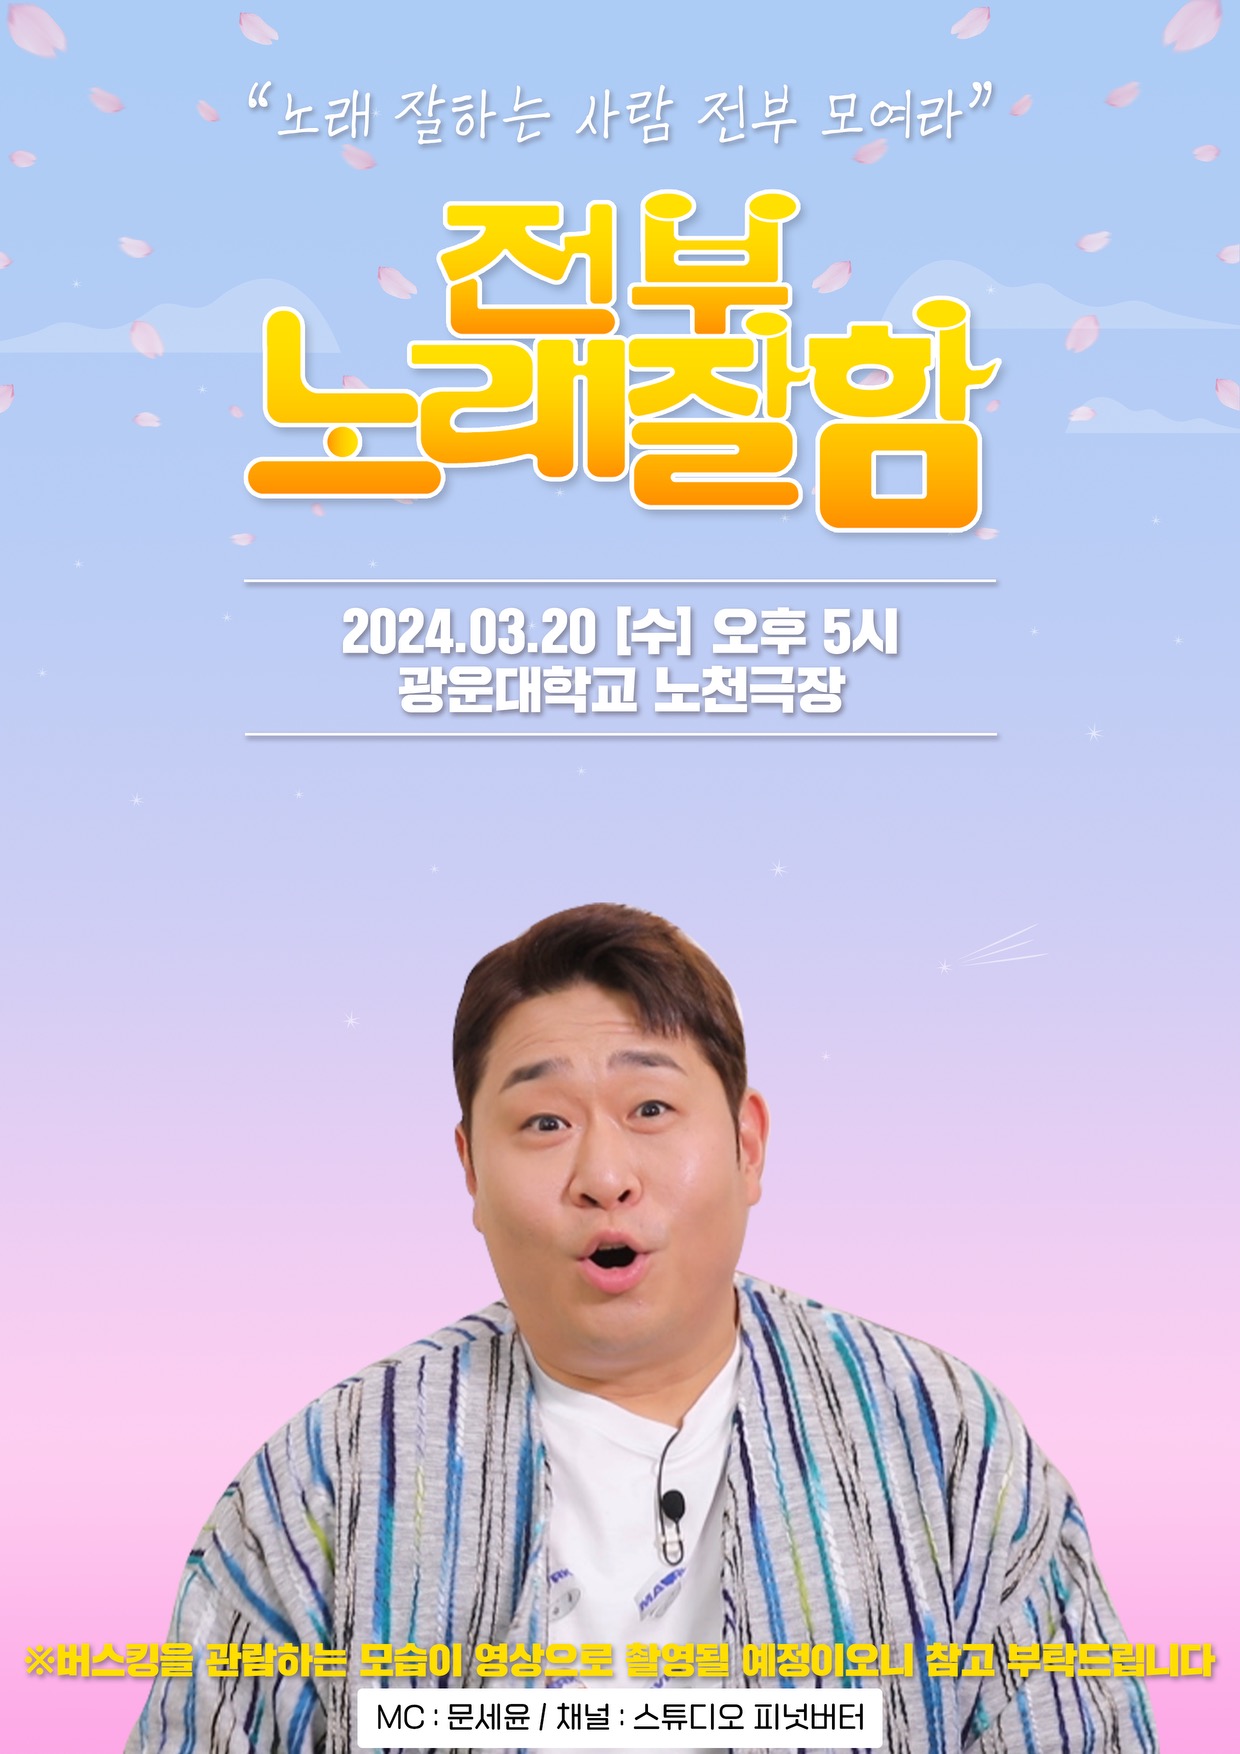 유튜브 콘텐츠 '전부노래잘함' 교내 촬영 홍보 포스터